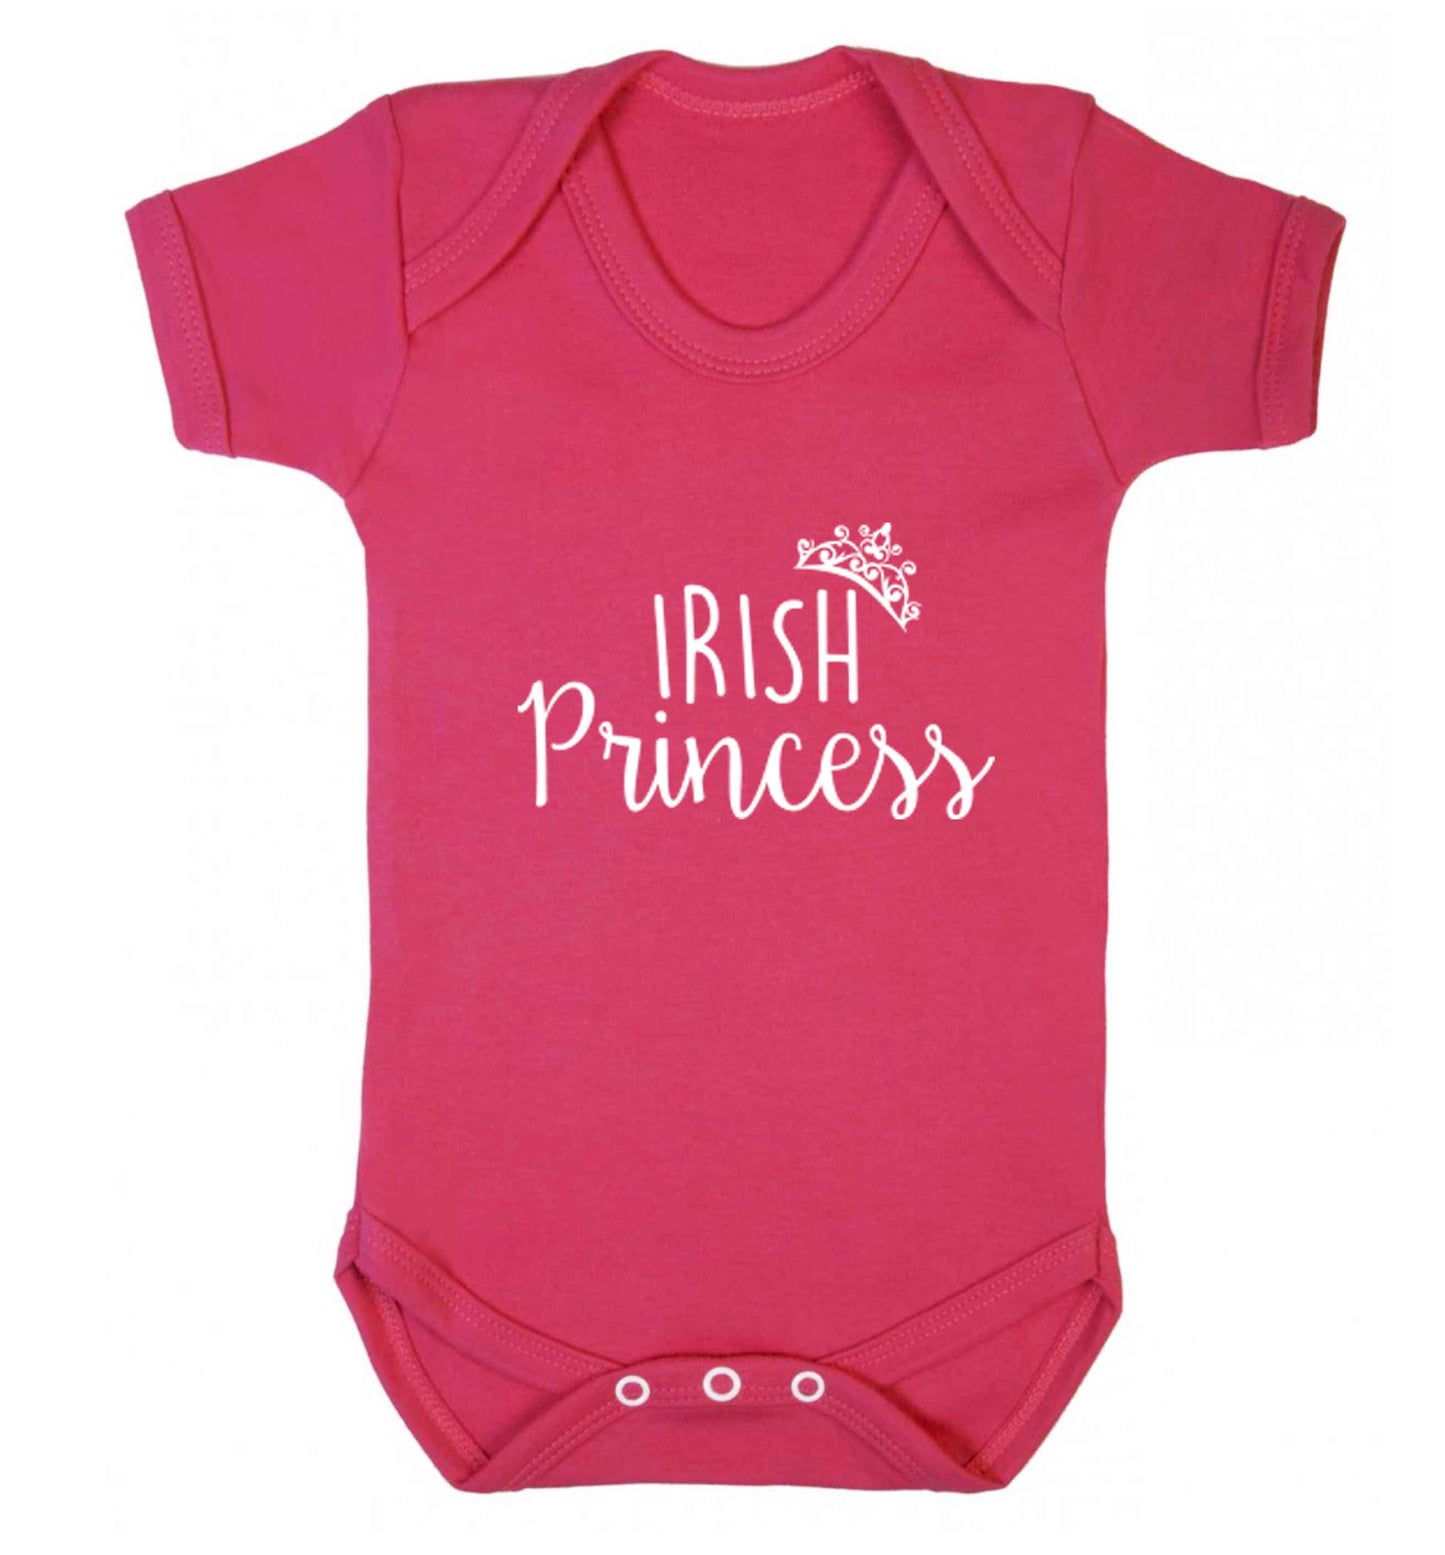 Irish princess baby vest dark pink 18-24 months